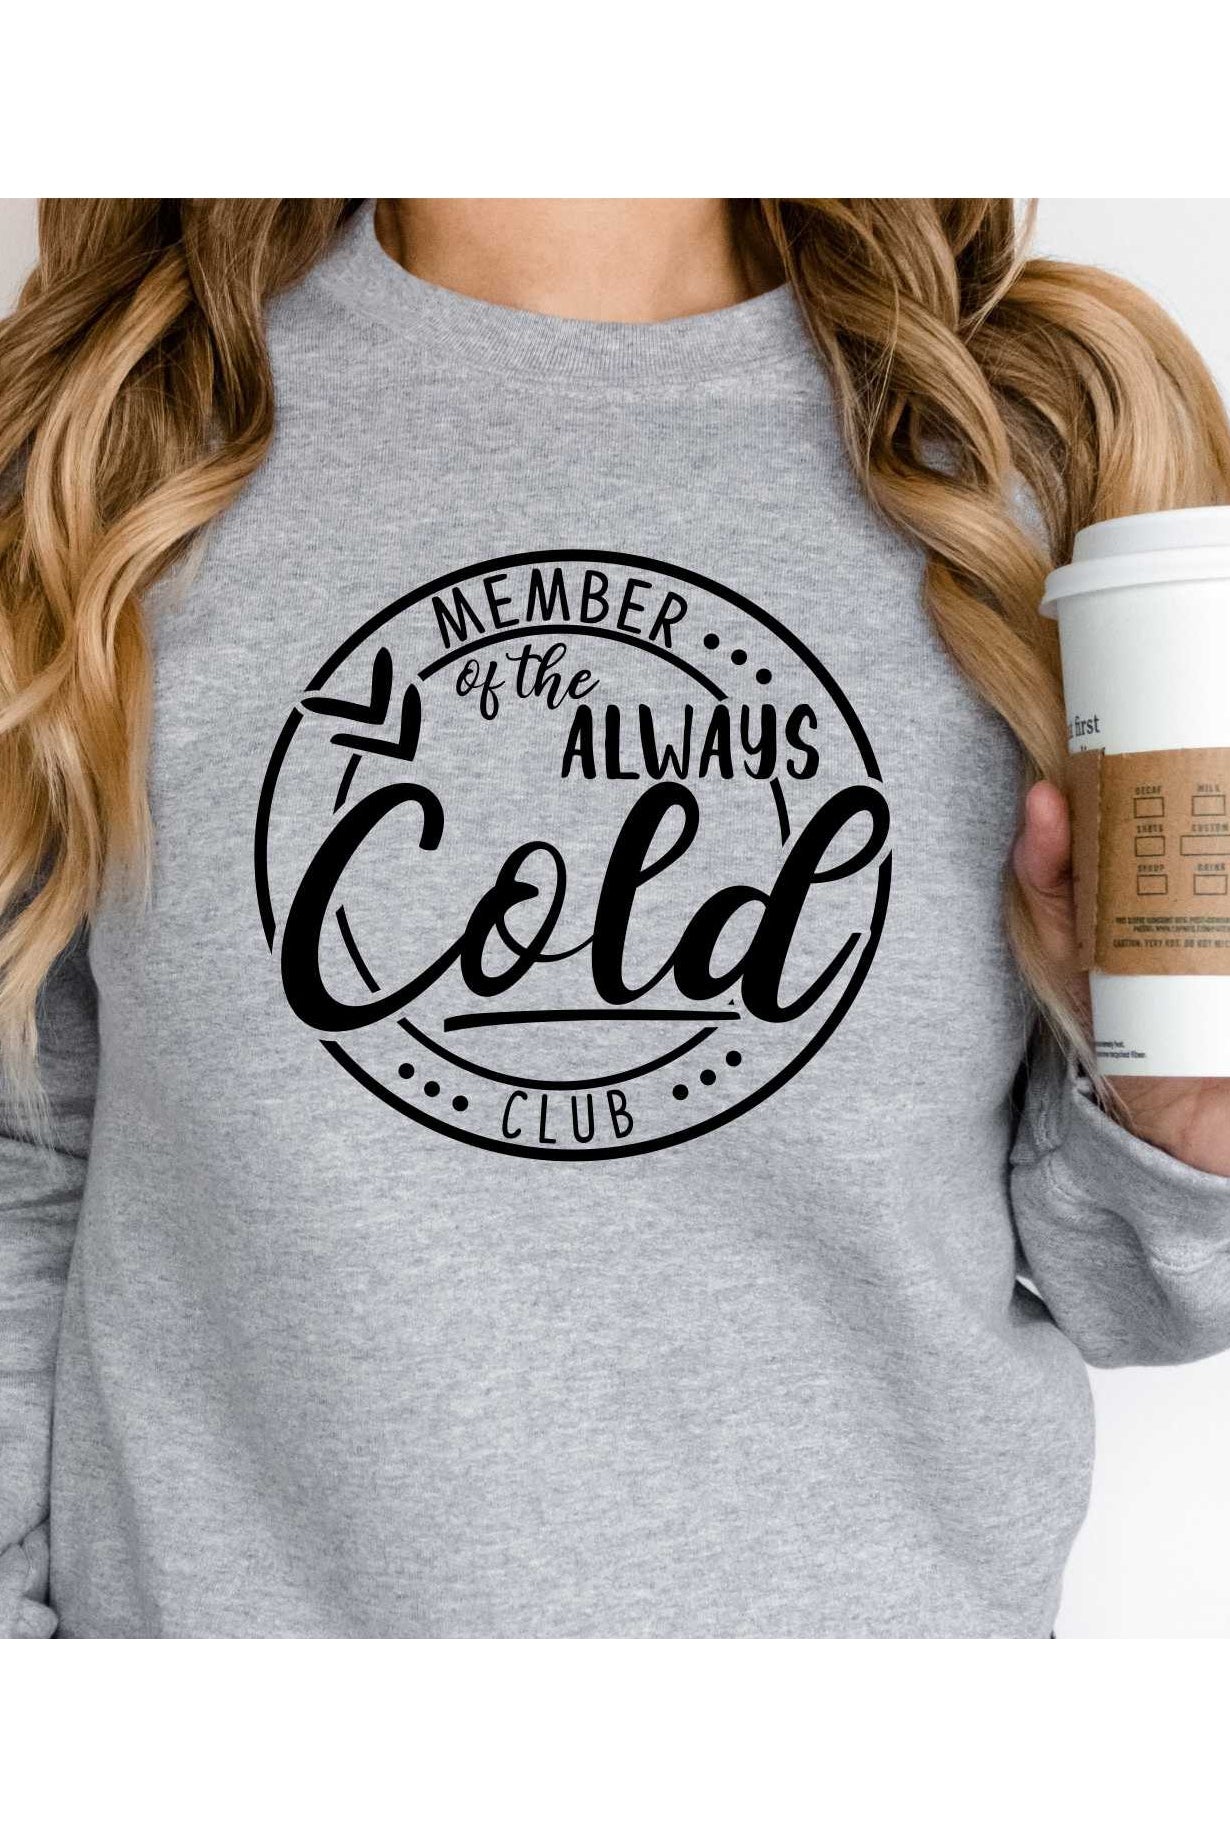 Always Cold Club Sweatshirt - GemThreads Boutique